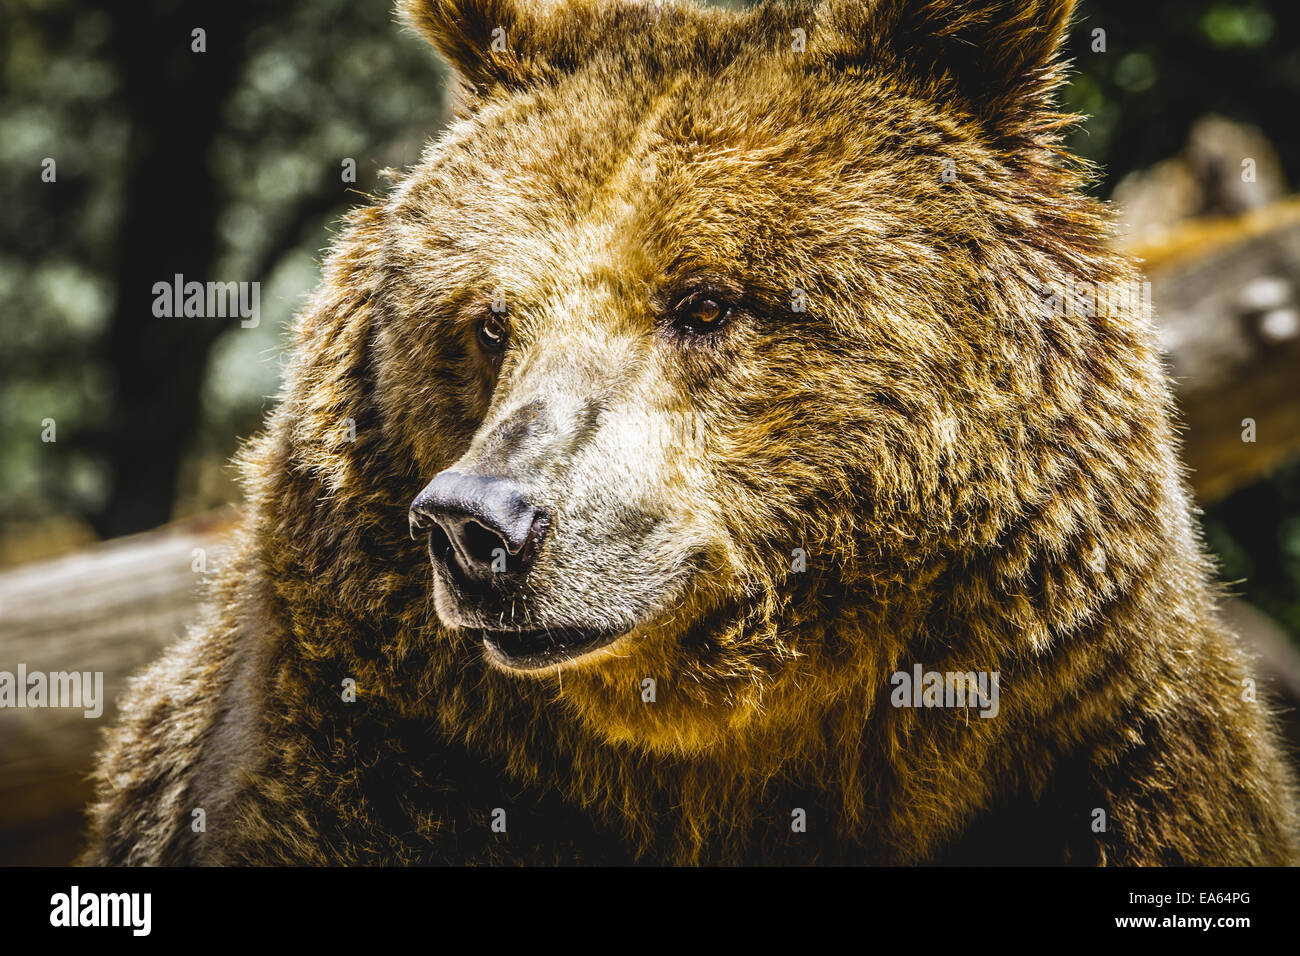 Zoo, bella e pelliccia di orso bruno mammifero Foto Stock